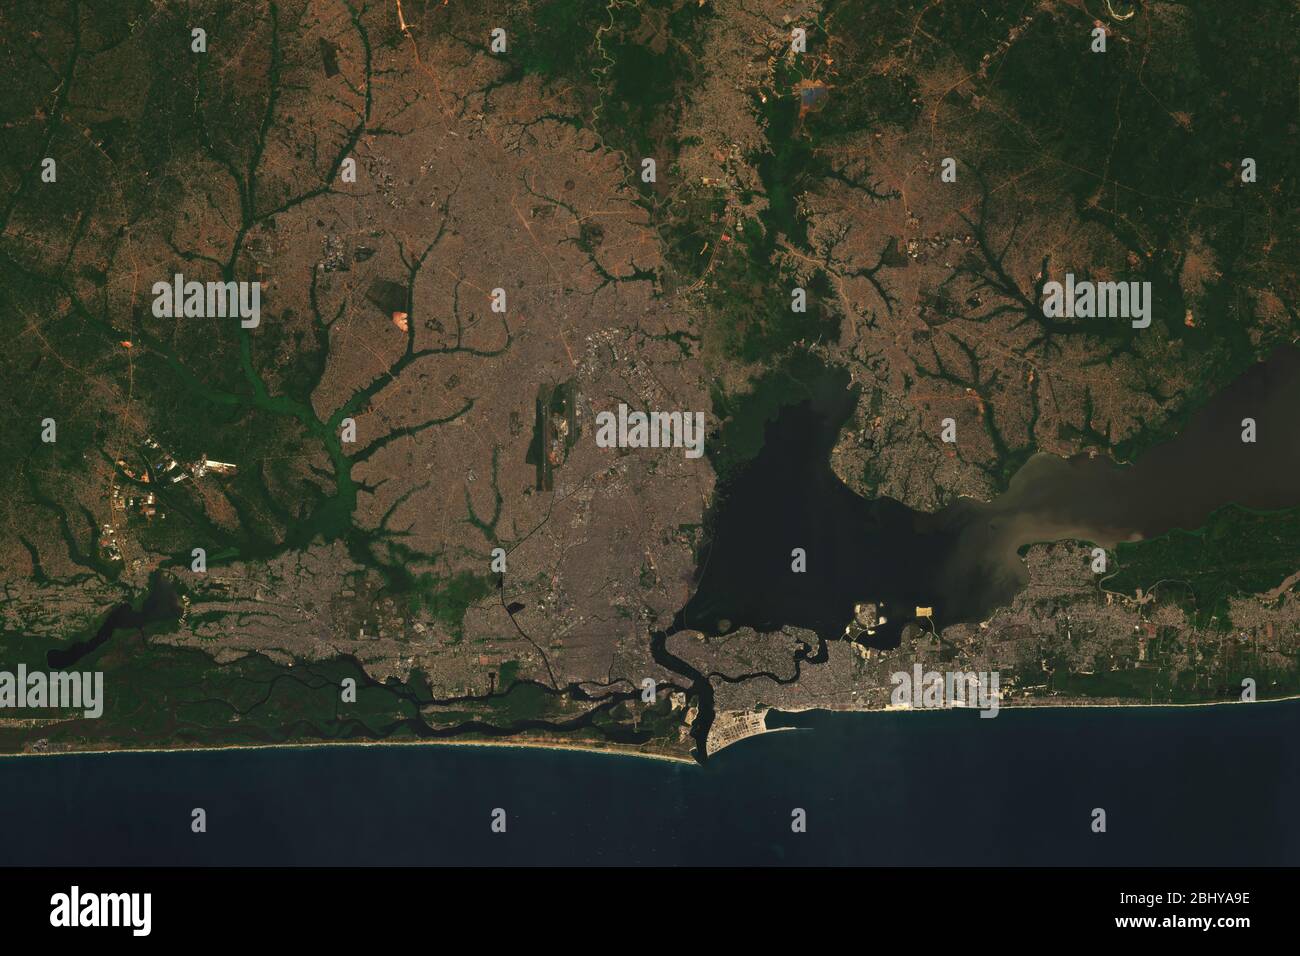 Immagine satellitare ad alta risoluzione di Lagos, Nigeria - contiene dati Copernicus Sentinel modificati (2020) Foto Stock